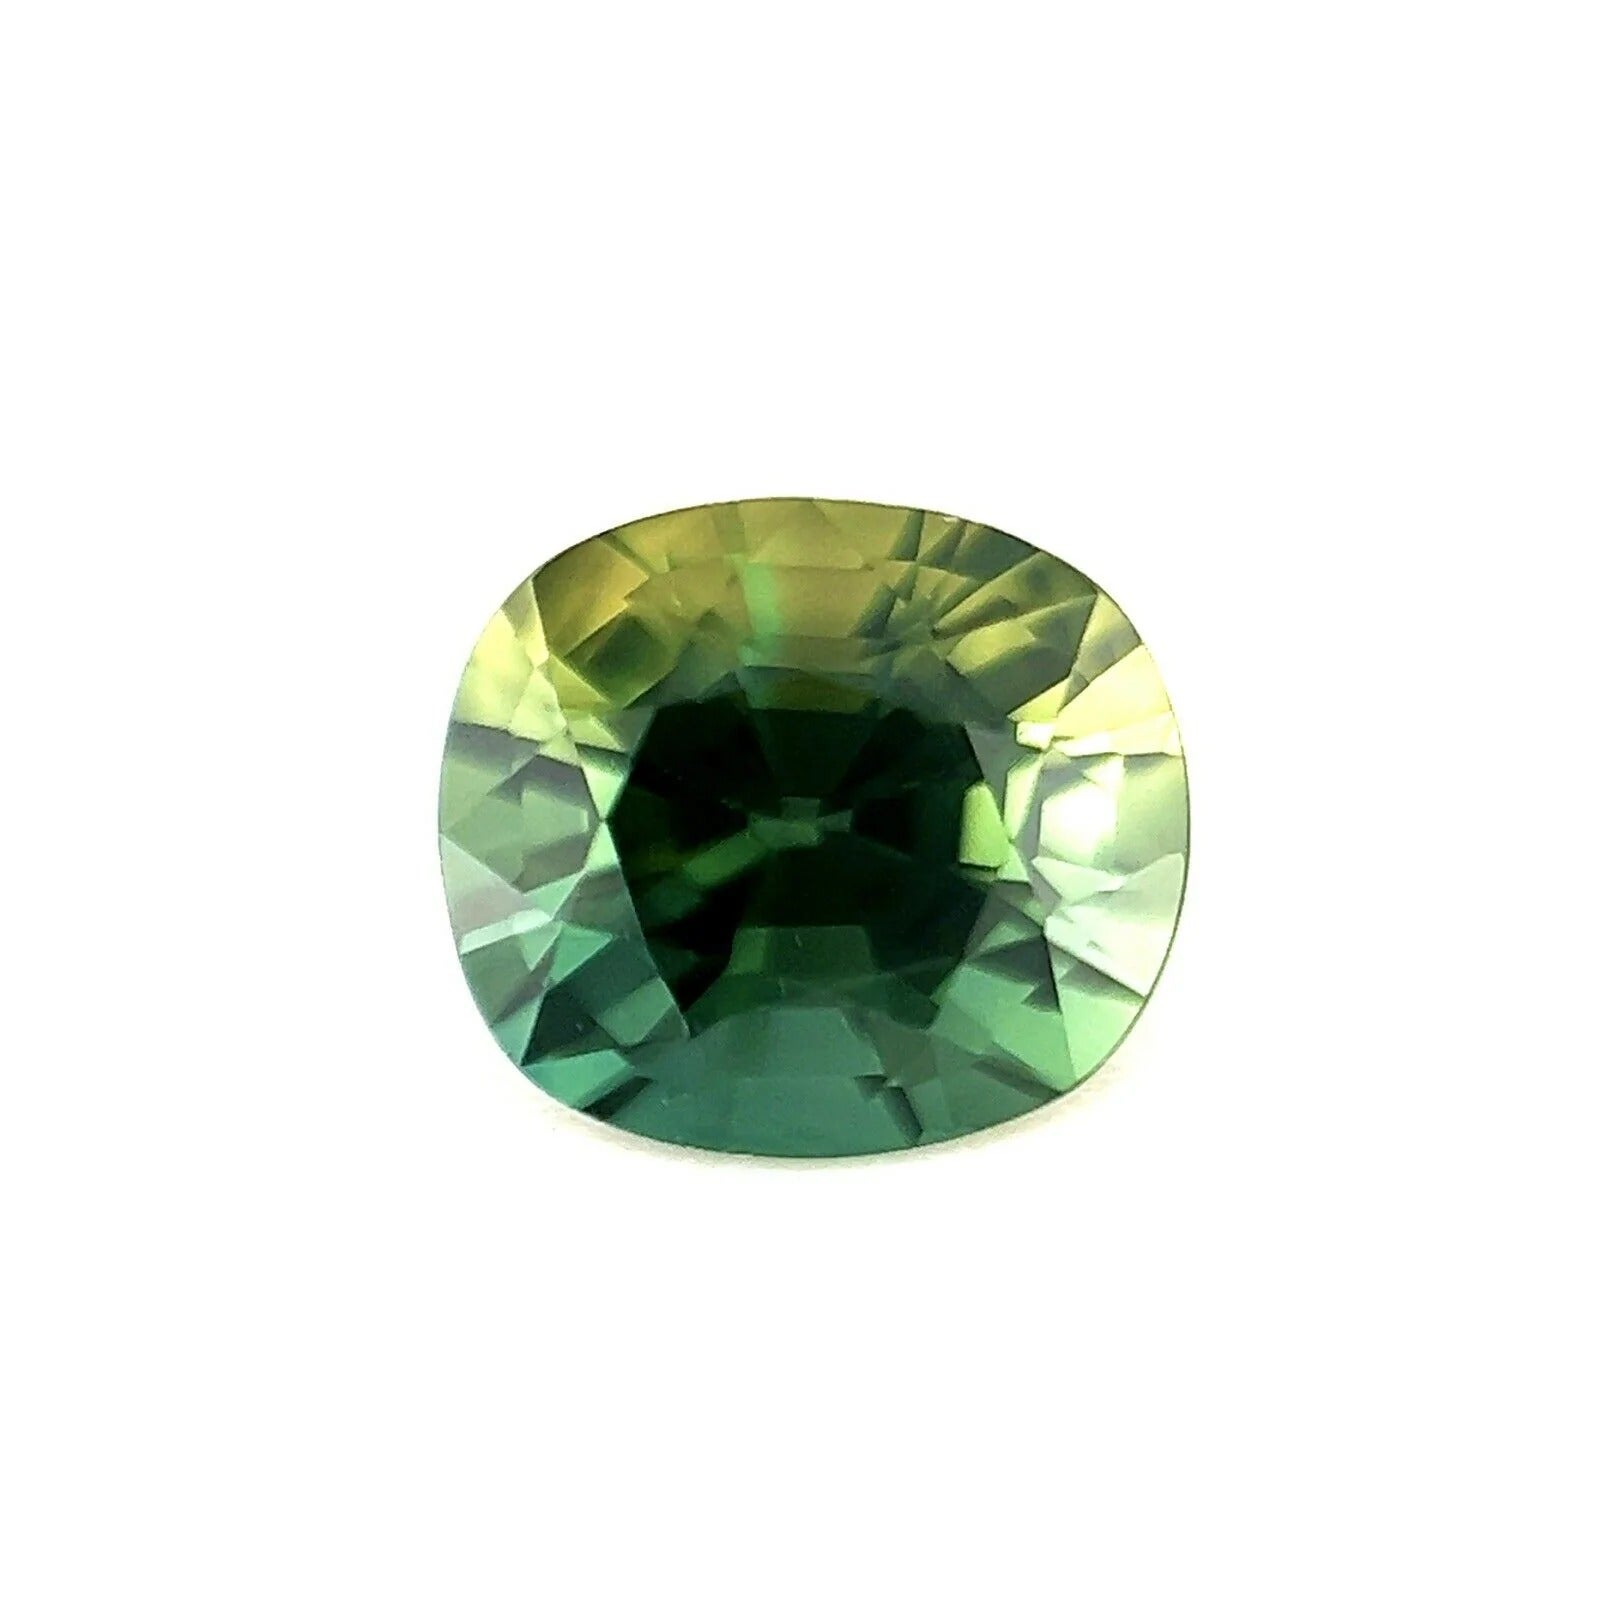 Saphir de couleur partielle non traité 1,26 carat, certifié GIA, taille coussin, sans chaleur